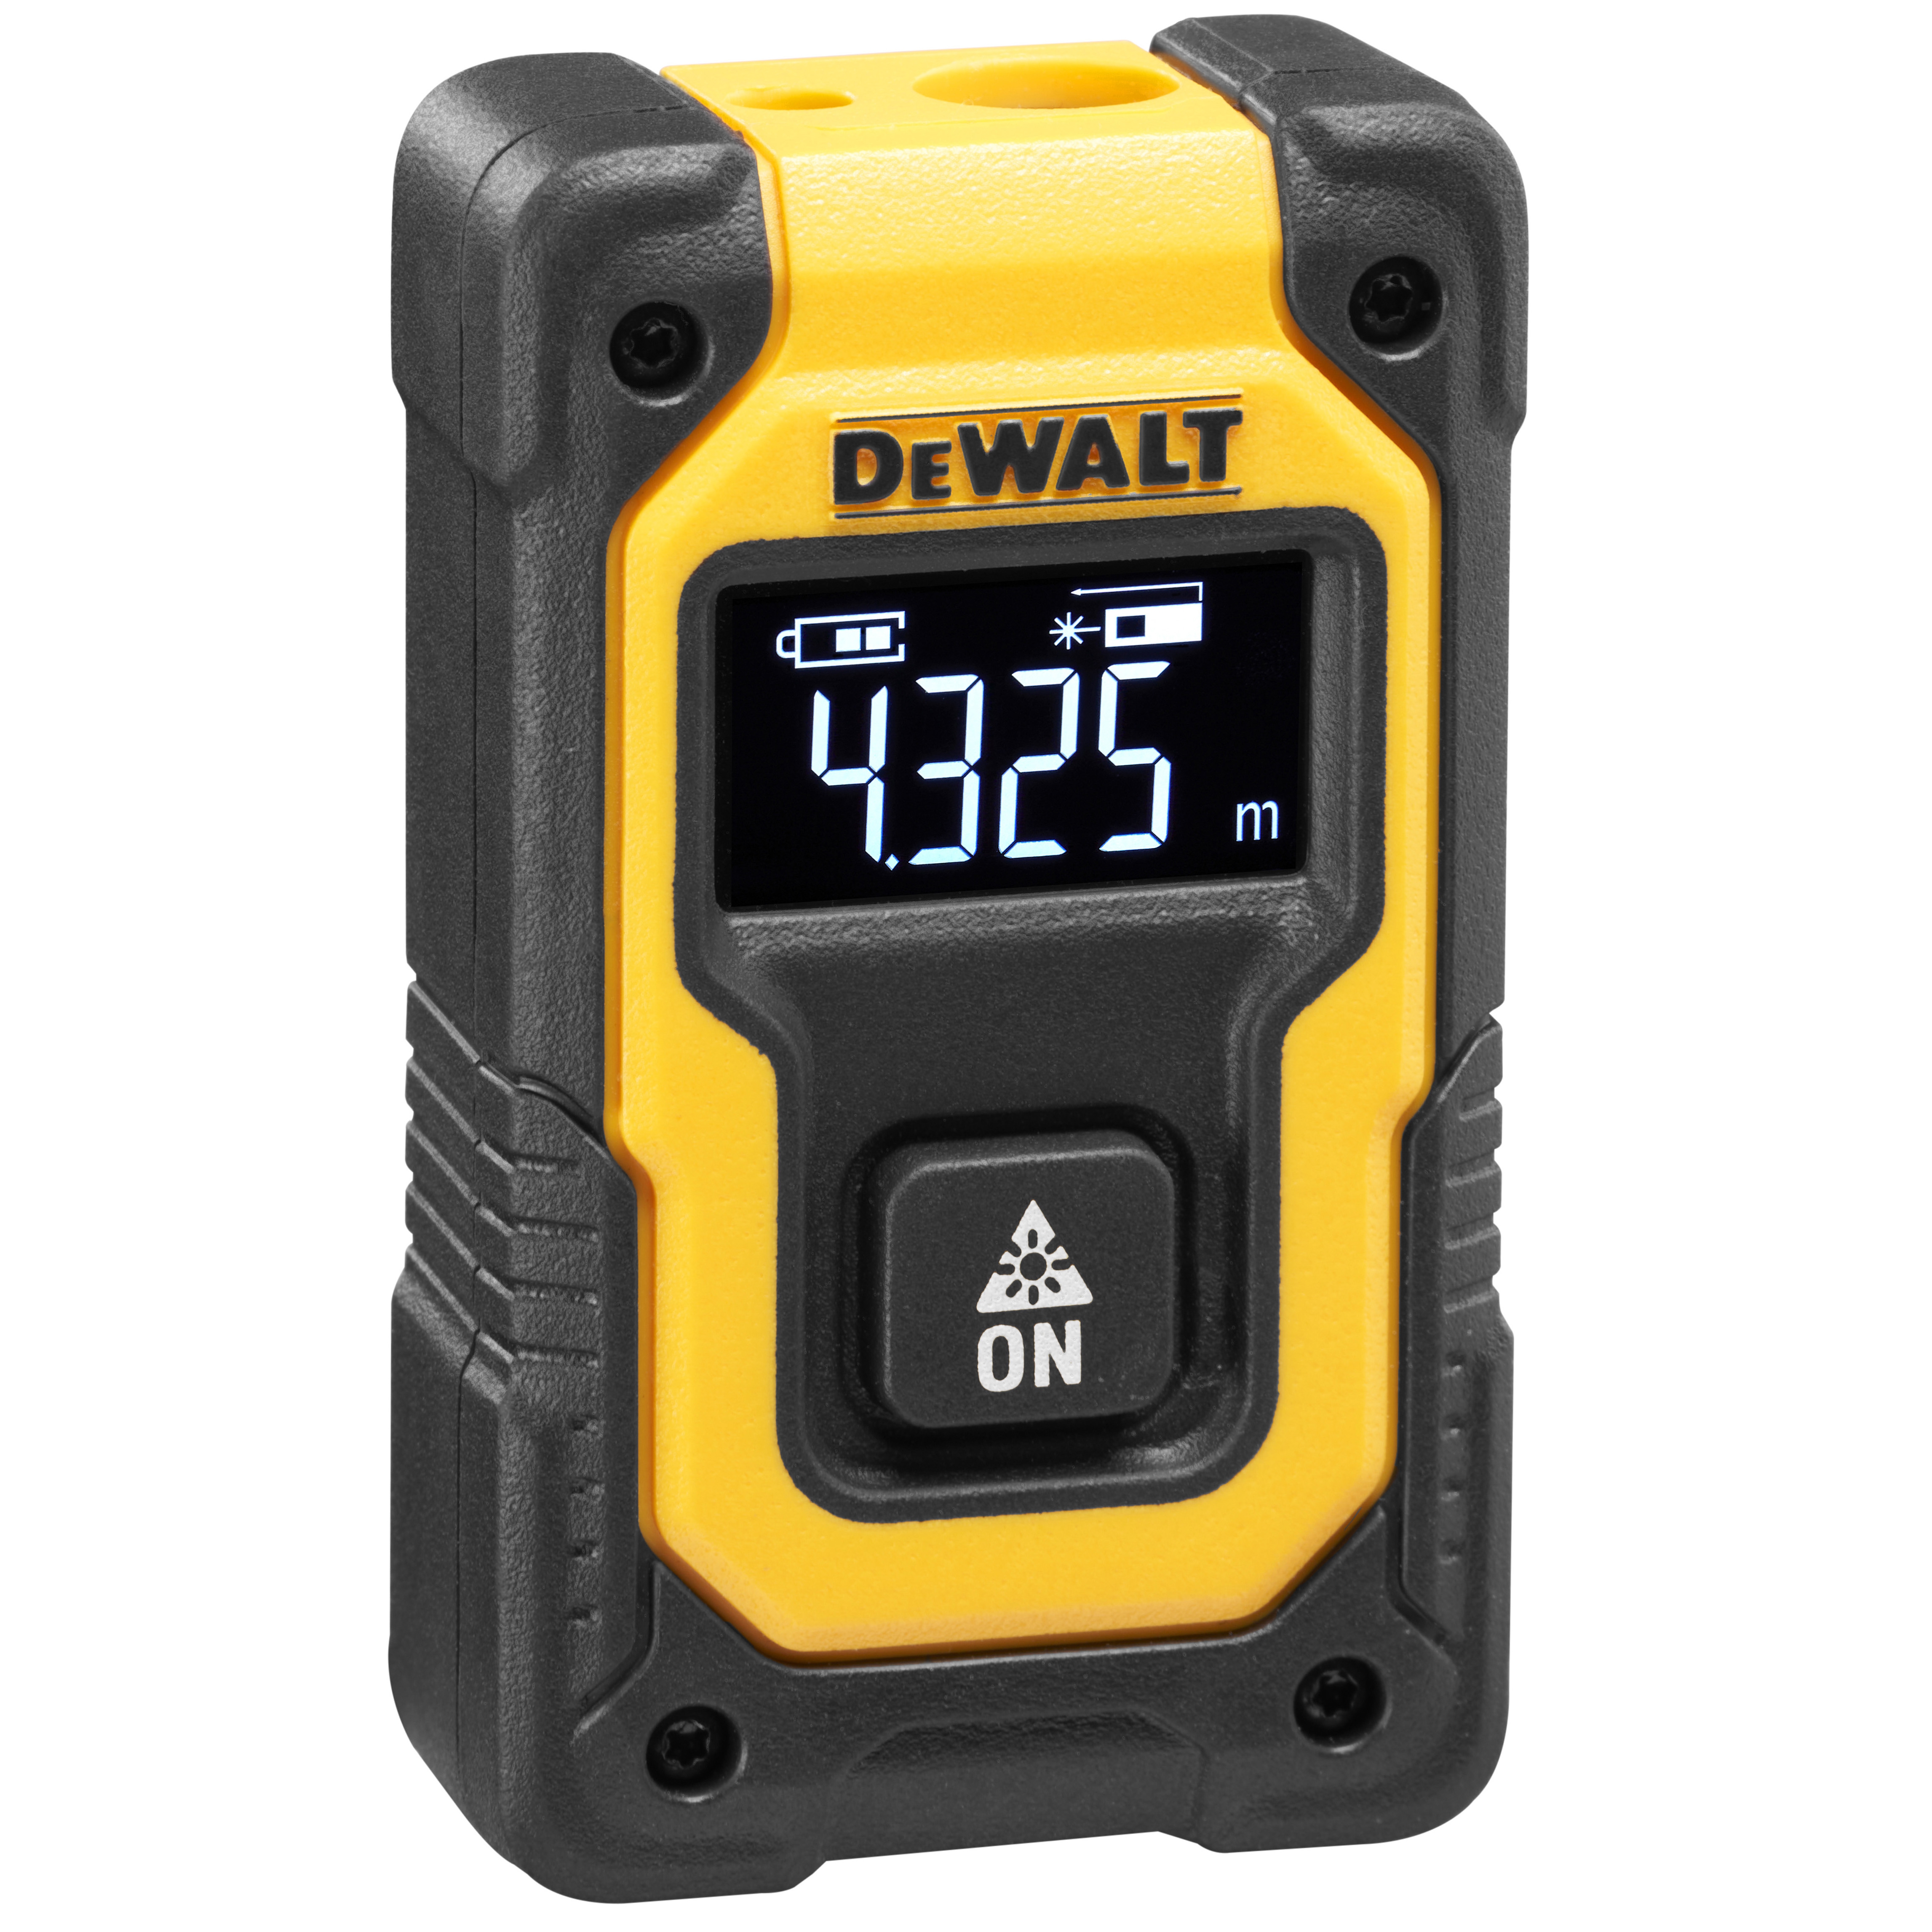 Dewalt DW055PL-XJ,  Entfernungsmesser bis 16m, Laserentfernungsmesser im Taschenformat bis 16m mit Ein-Knopf-Klick-Messung und USB-Anschluss, bis zu 1000 Messungen